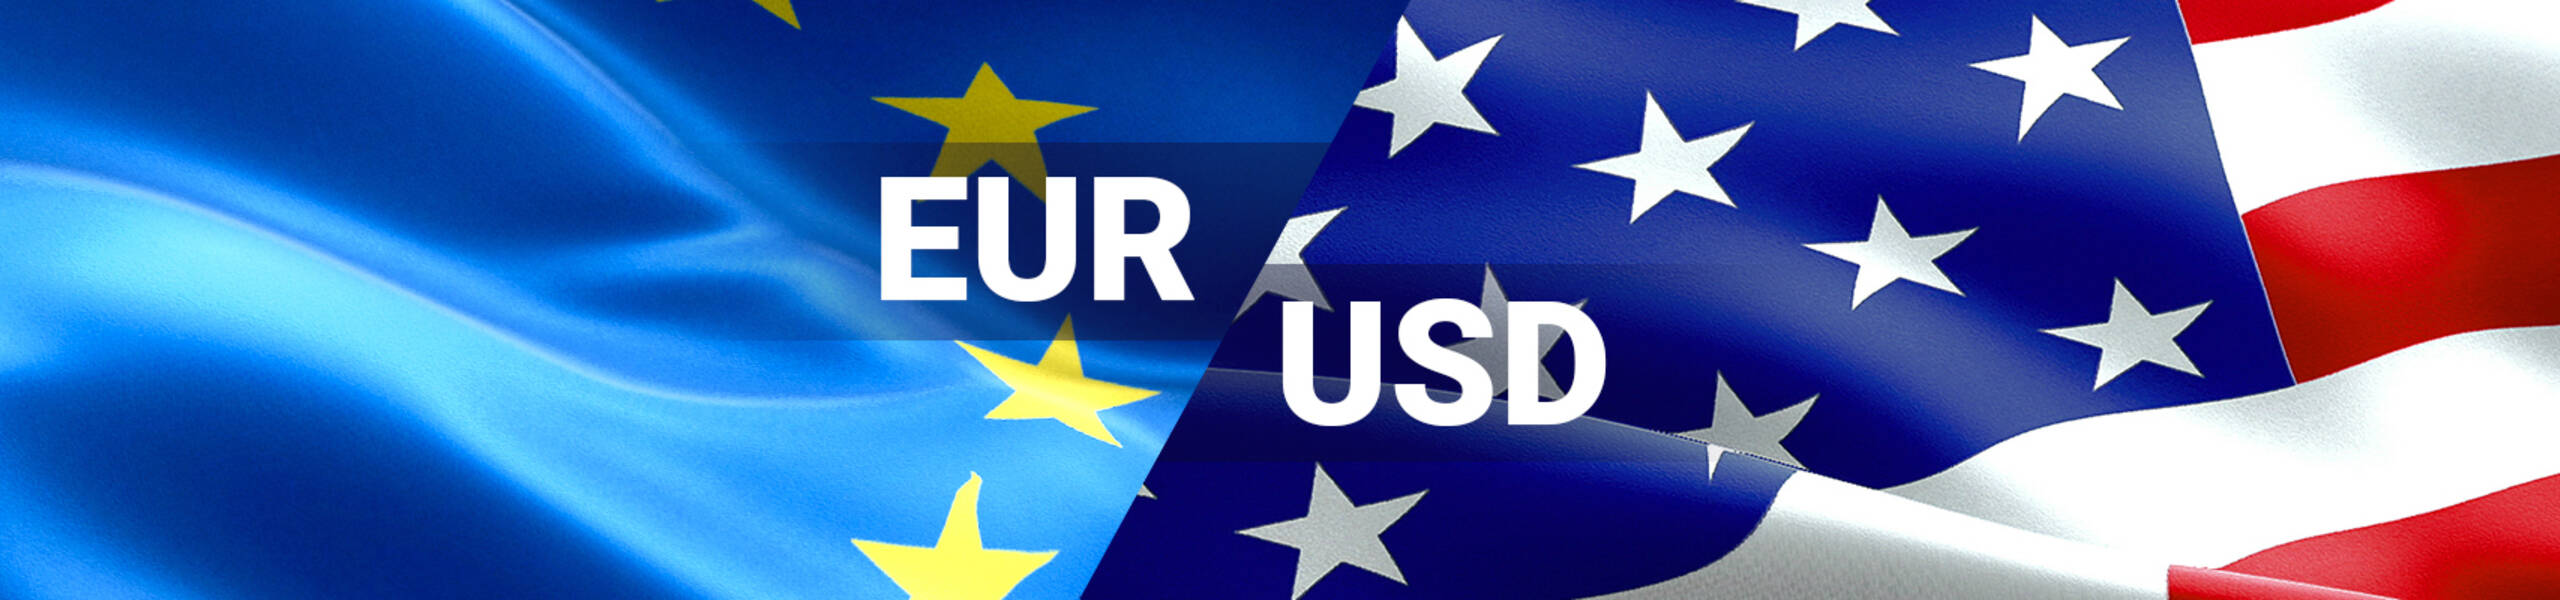 EUR/USD buscando solidez en los niveles actuales